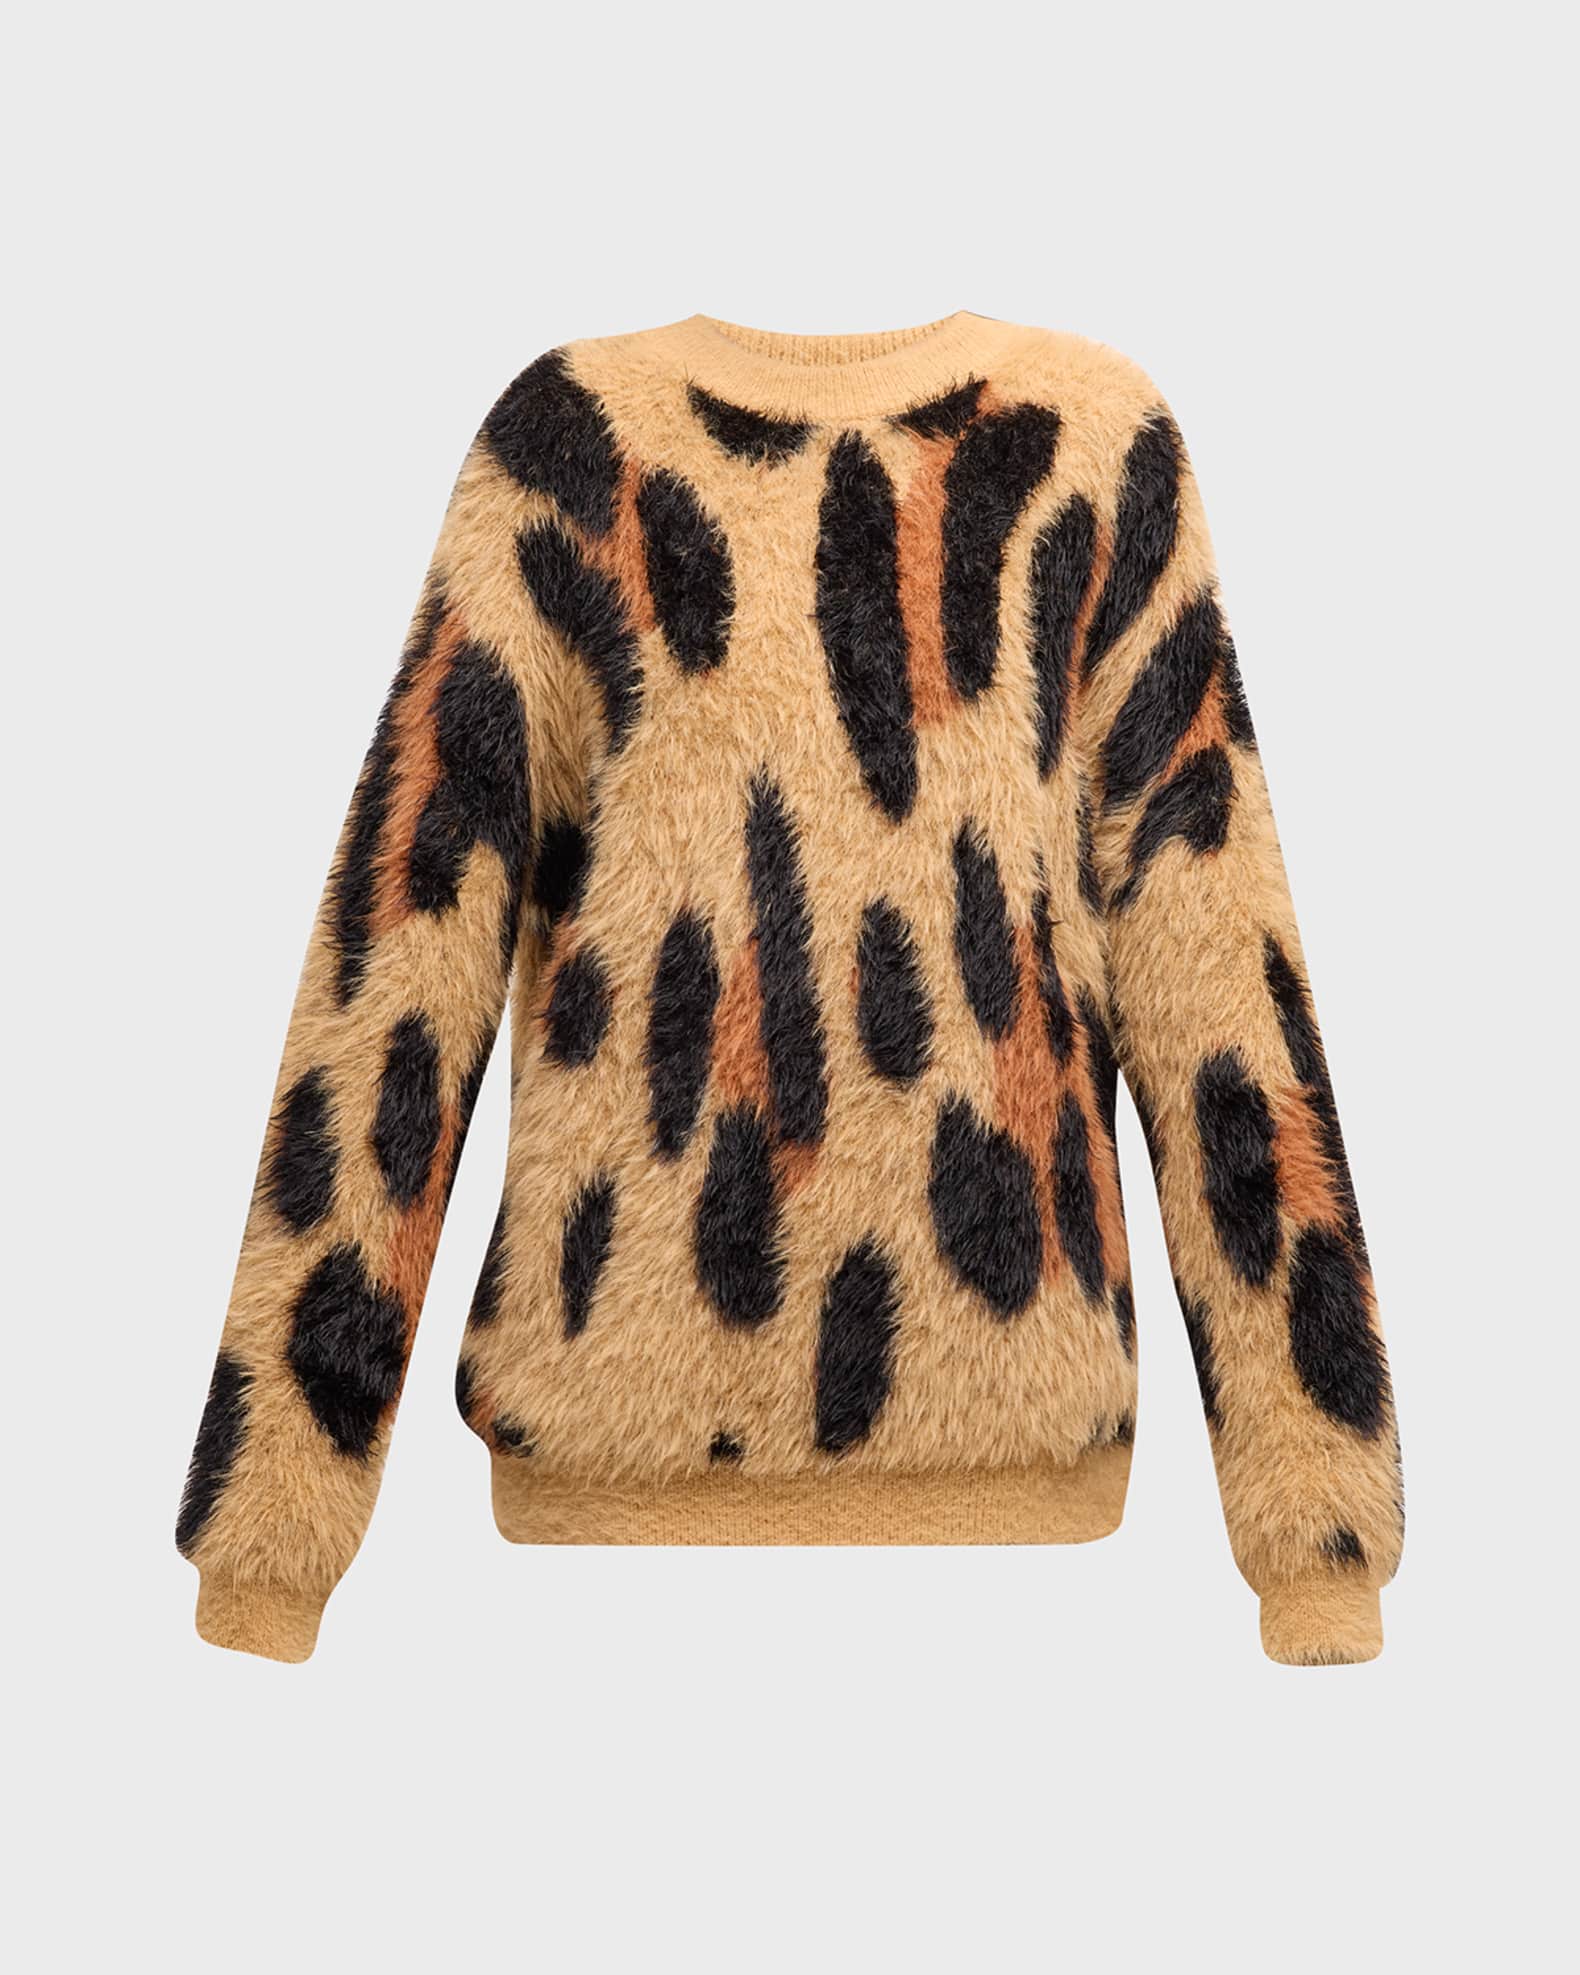 Dozy Leopard Fuzzy Knit Sweater | Neiman Marcus